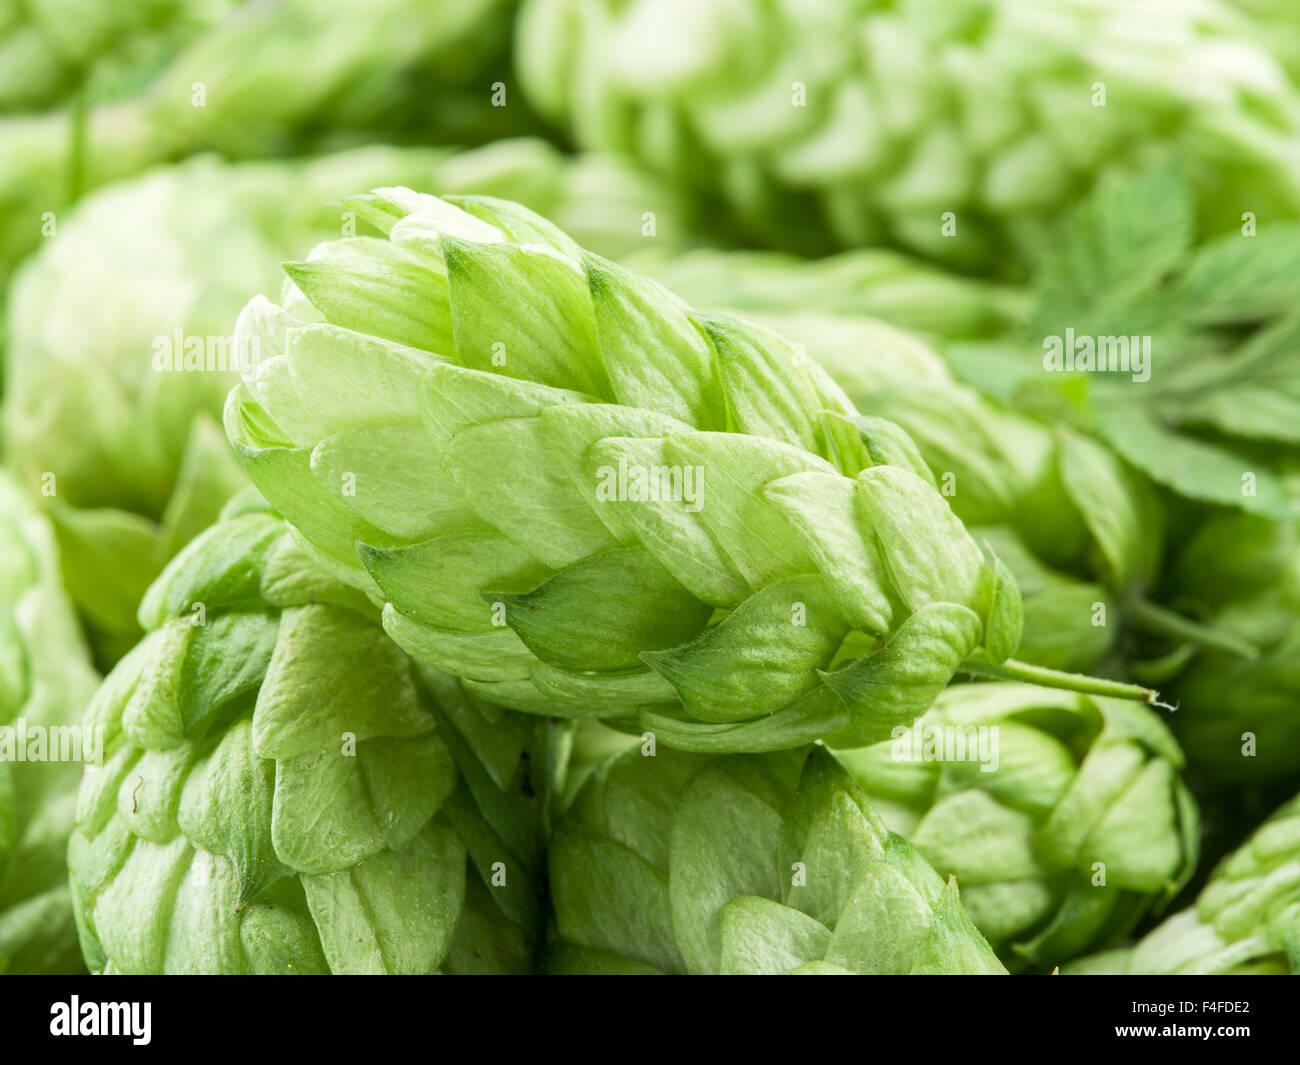 Conos de lúpulo verde - ingrediente en la producción de la cerveza. Foto de stock